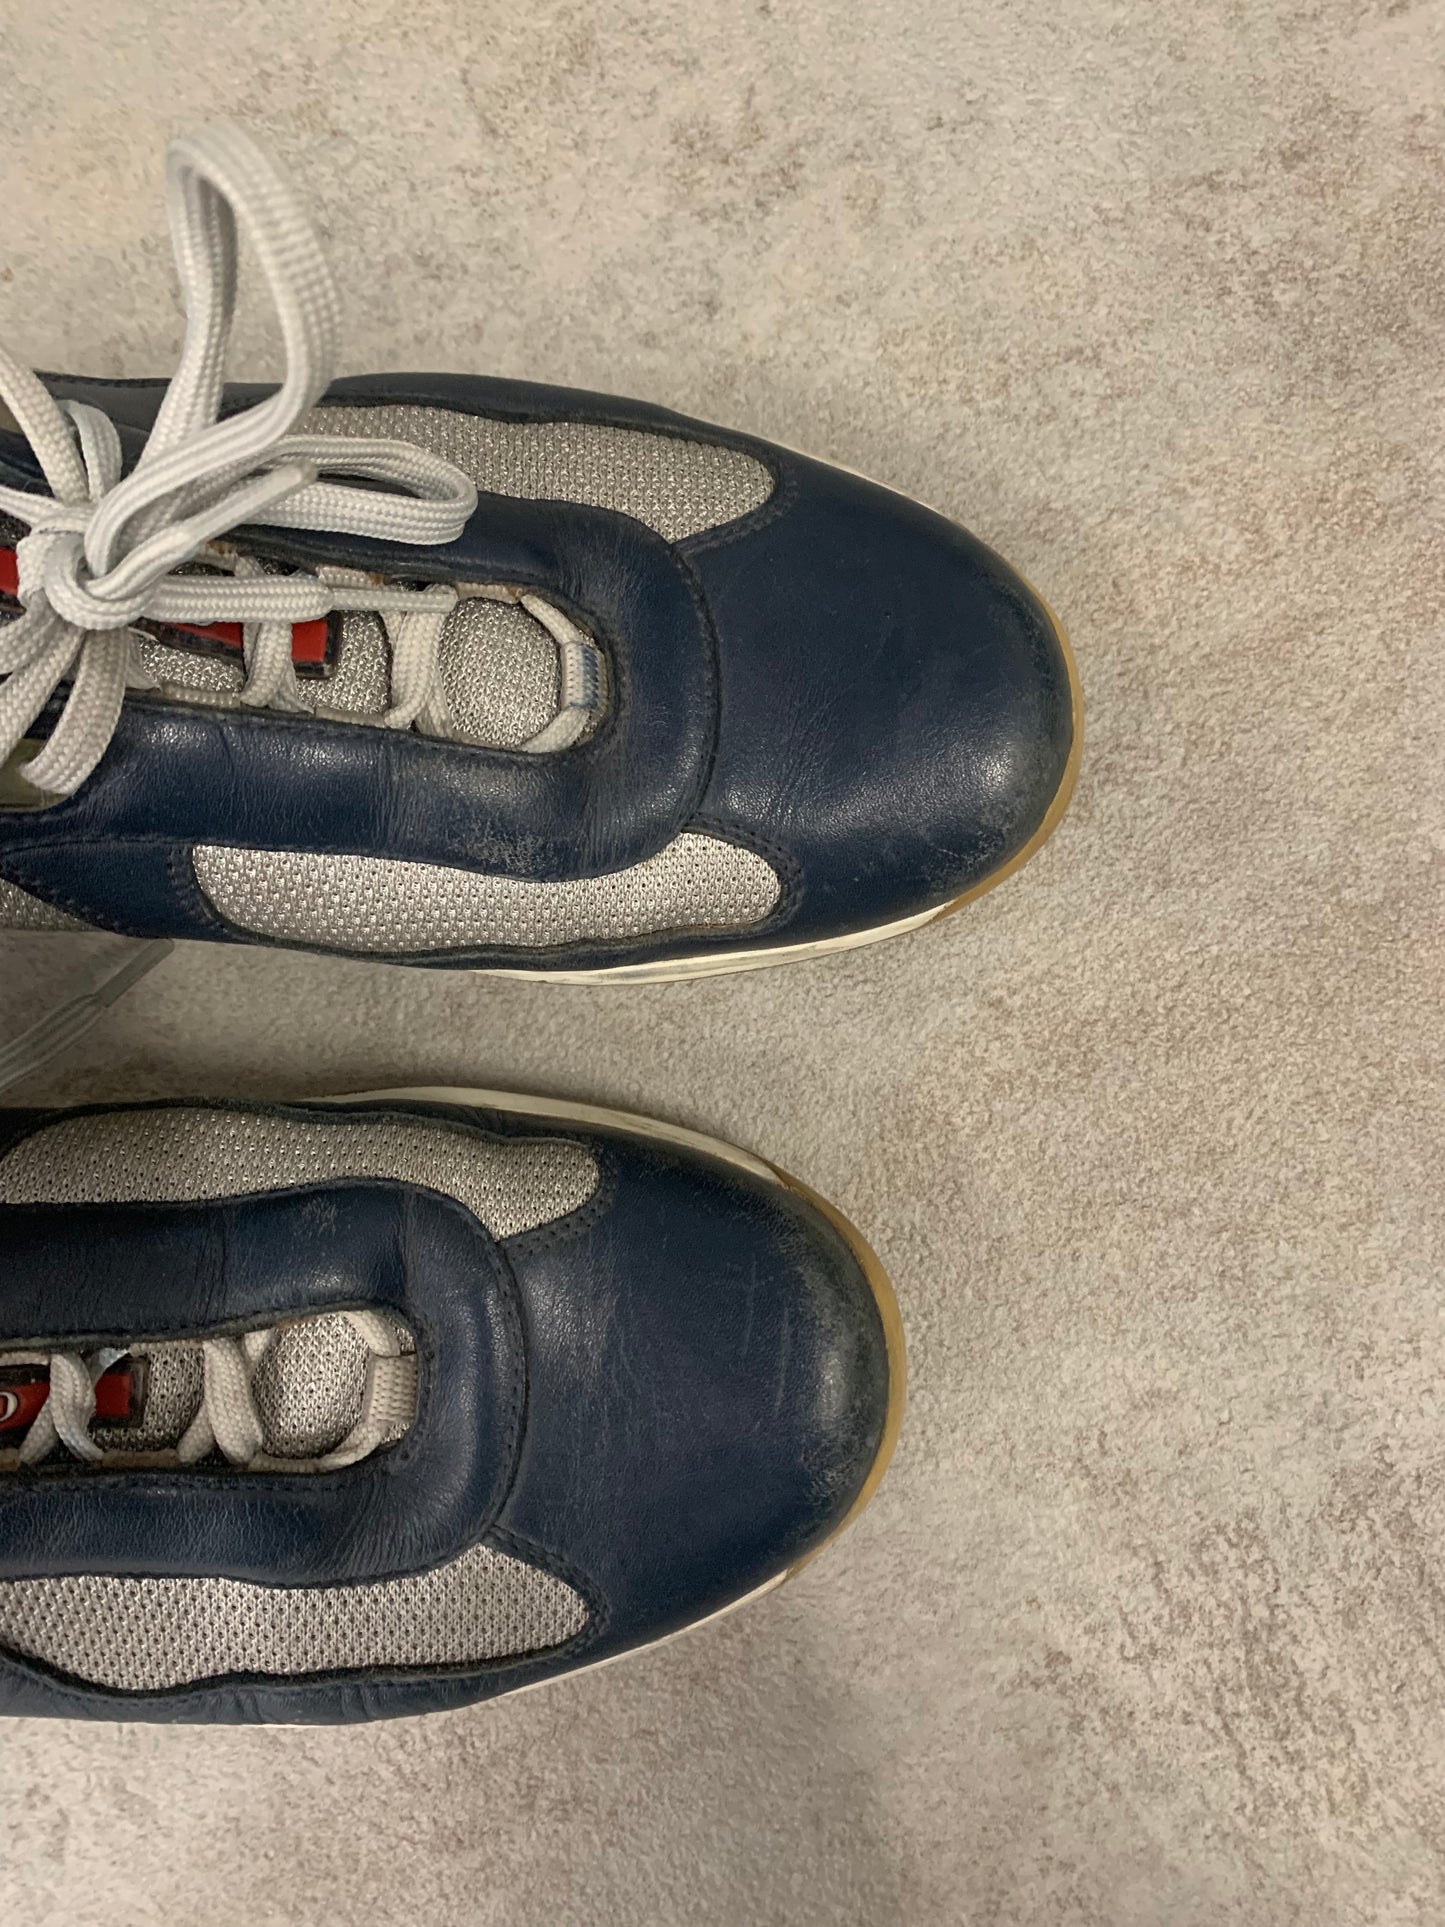 Zapatos Vintage Prada America’s Cup - 42